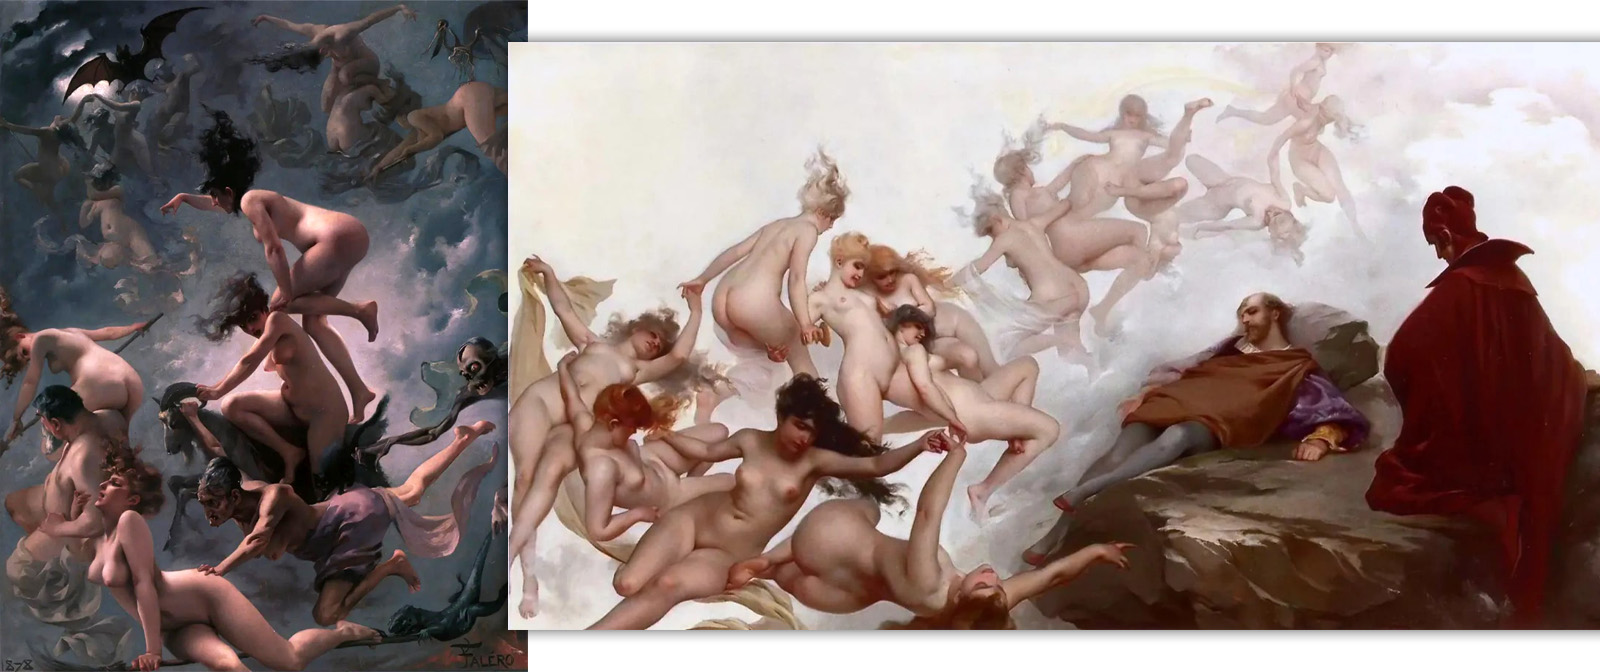 Звёзды и обнажённые девушки на незаурядных картинах Луиса Фигаро. ставшего основоположником современного “взрослого фэнтези”.